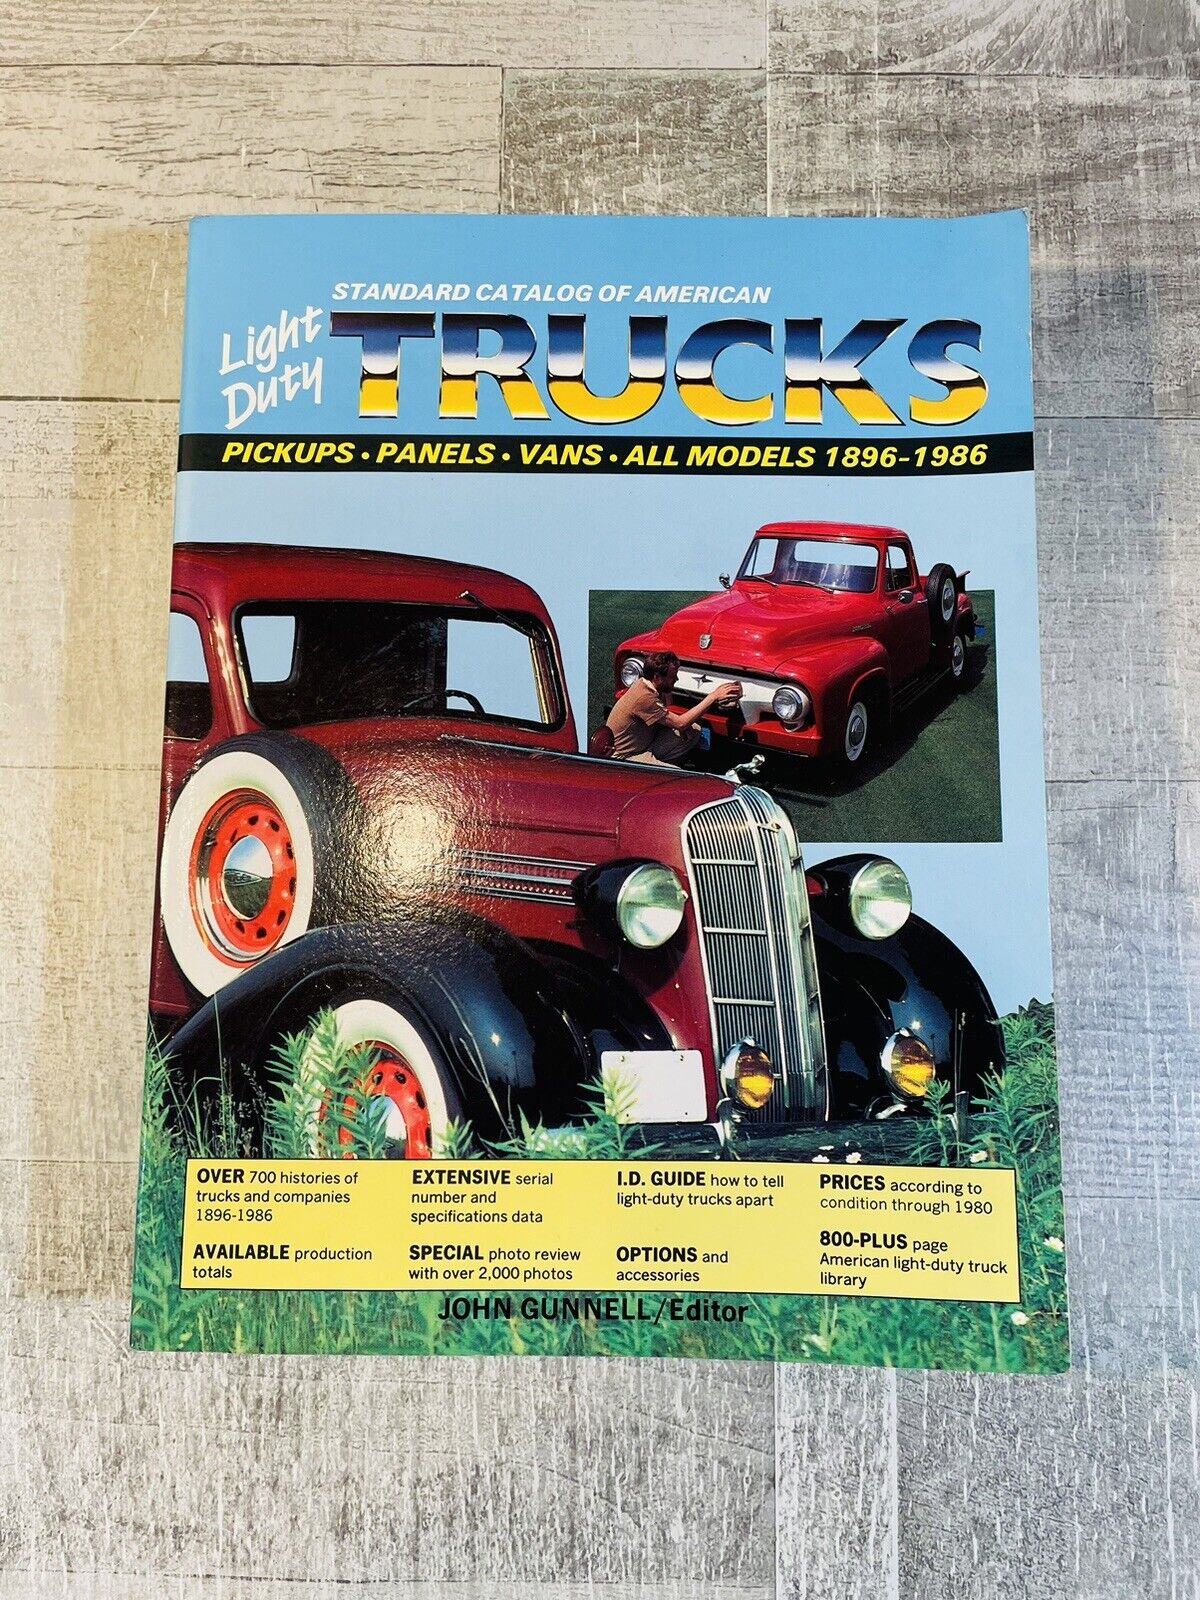 Standard Catalog of American Light-Duty Trucks 1896-1986 by John Gunnell 1987